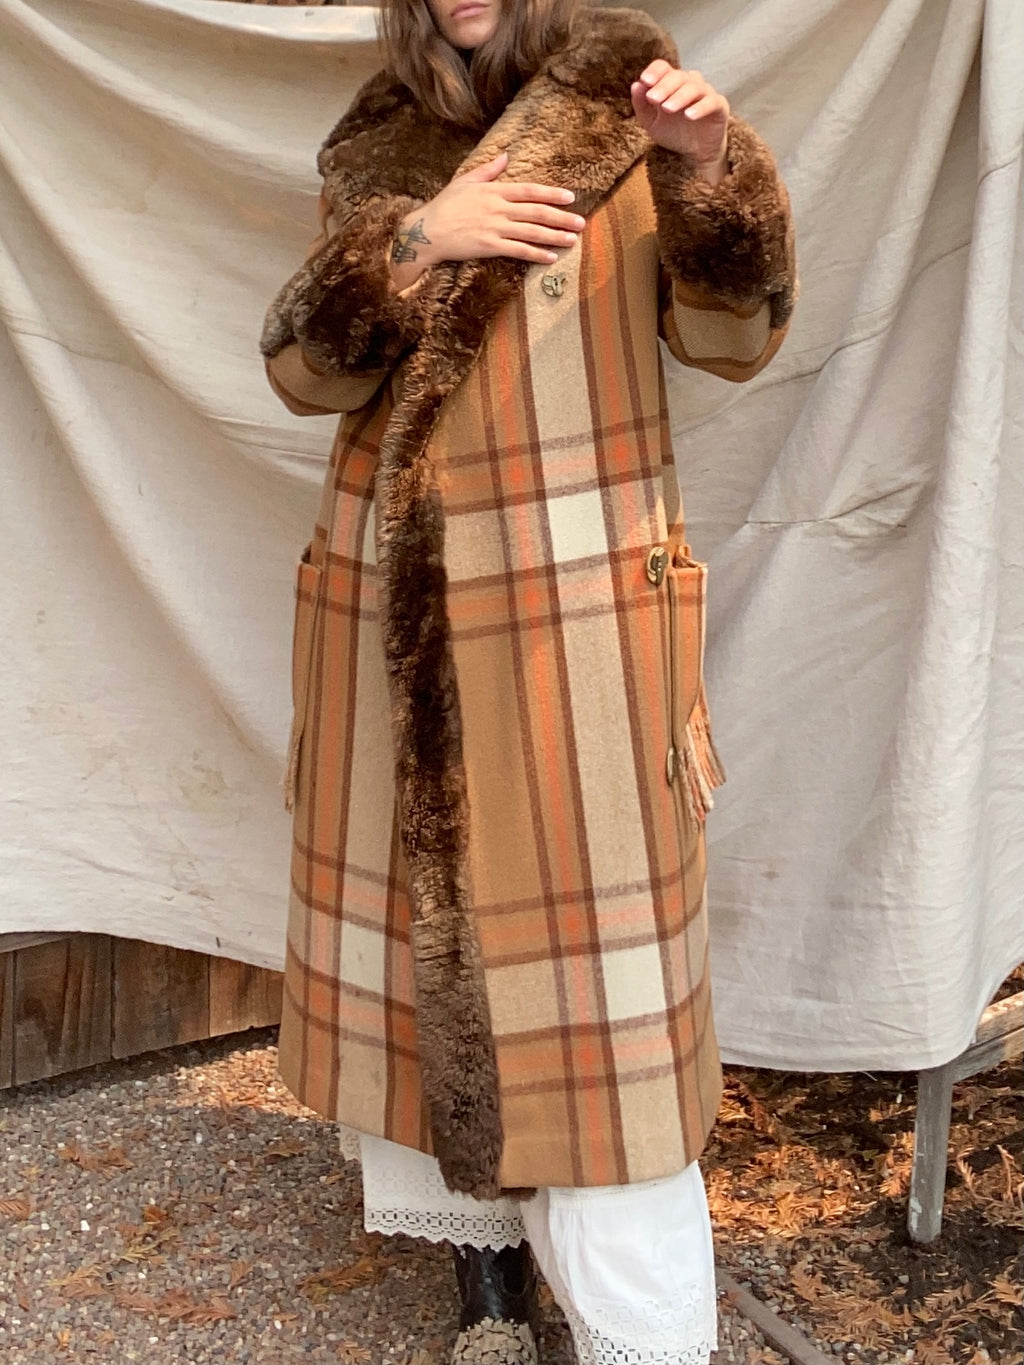 RESERVED~ 1920s Plaid Wool Fur Trimmed Fringe Coat